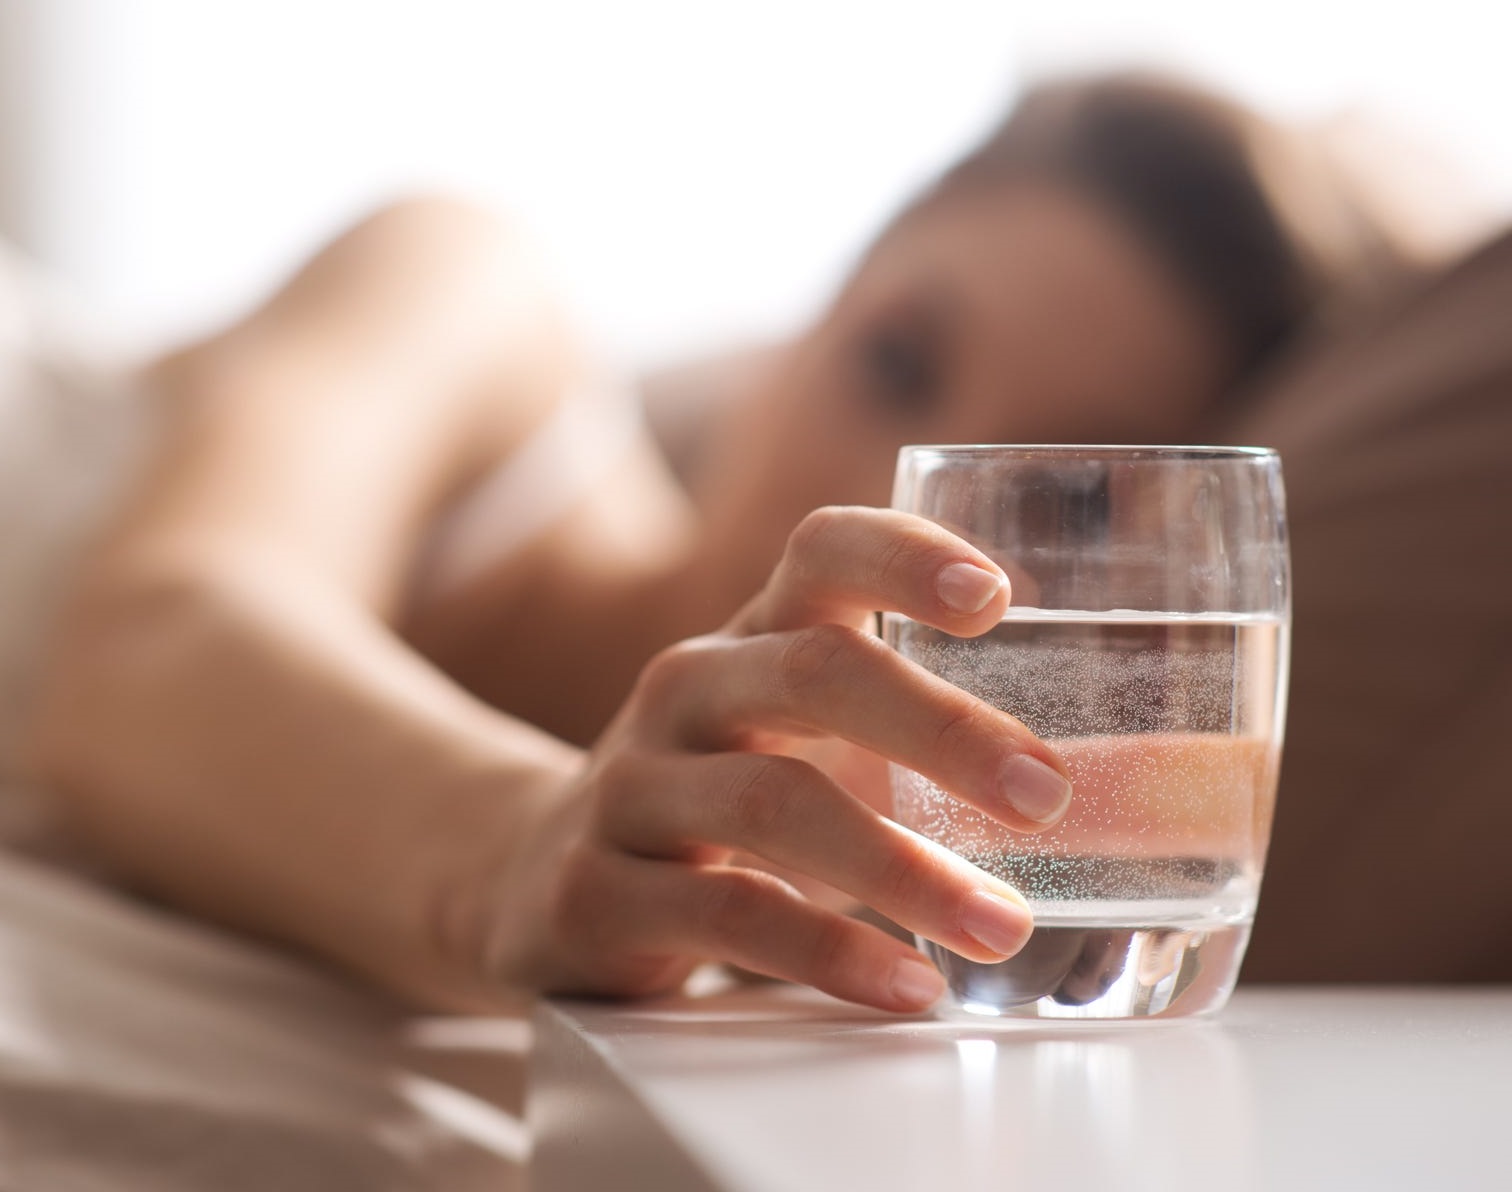 Uống nước vào 4 thời điểm vàng để tốt nhất cho sức khỏe